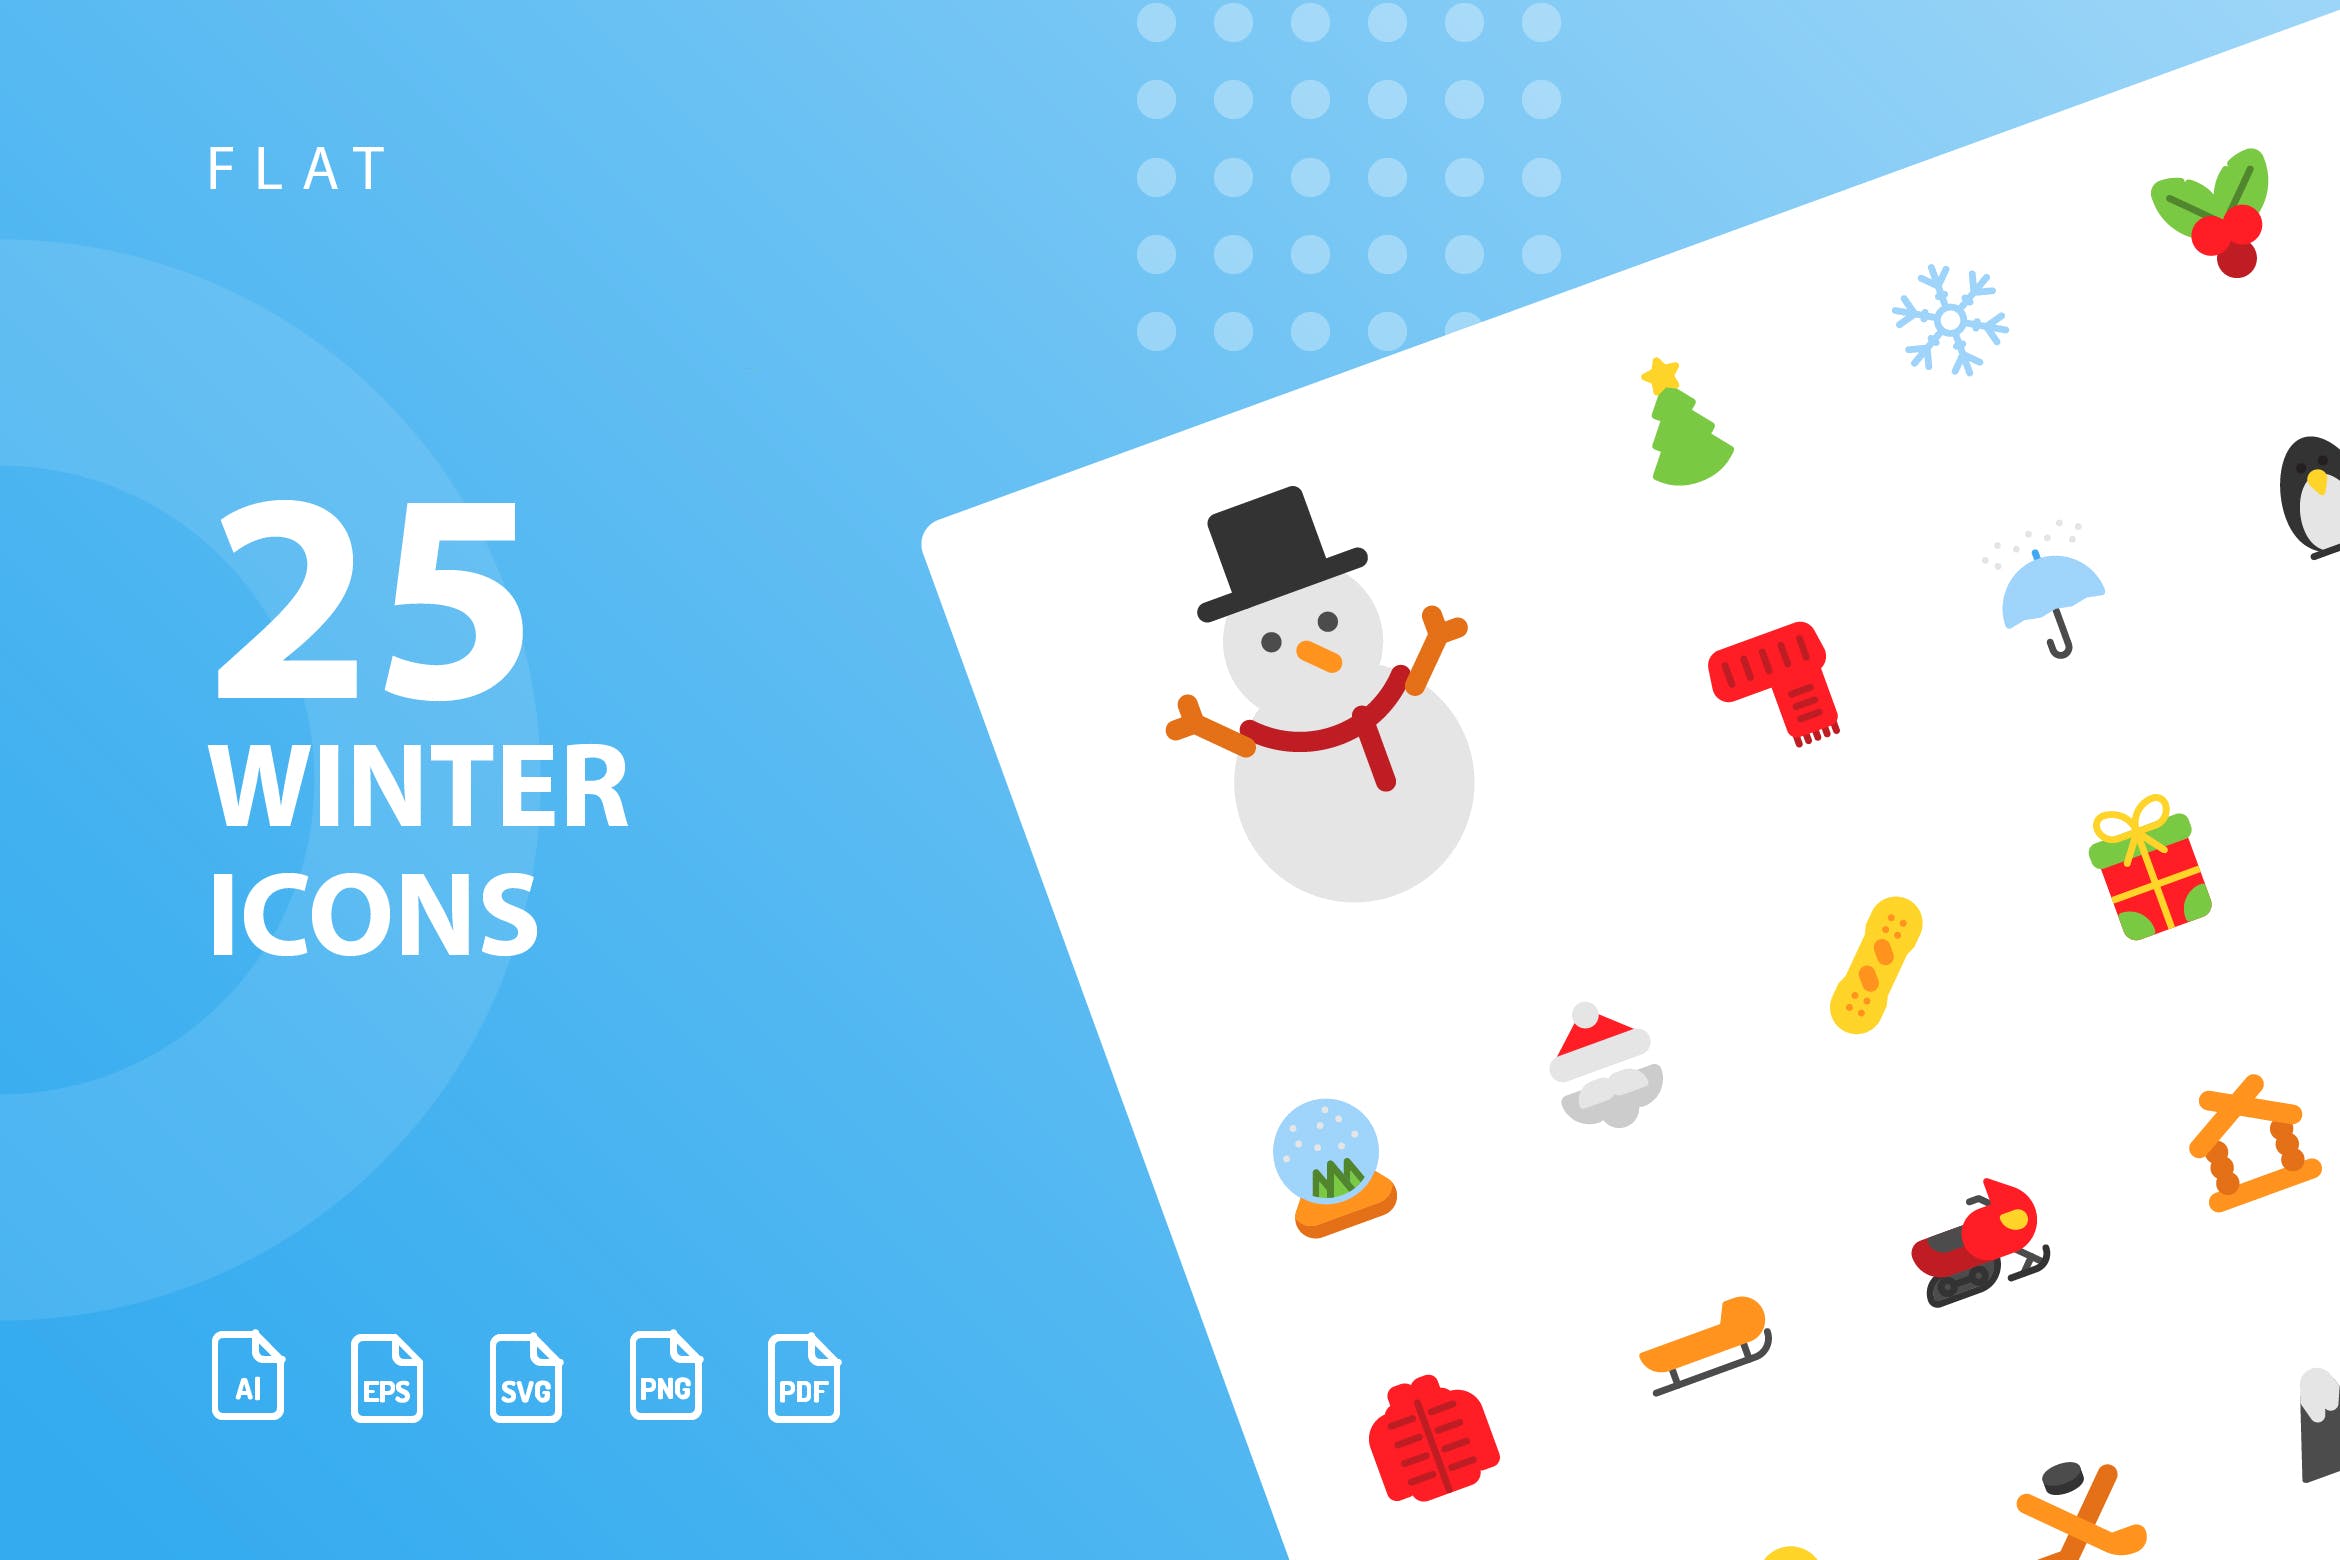 25枚冬天主题扁平设计风格矢量素材库精选图标v1 Winter Flat Icons插图